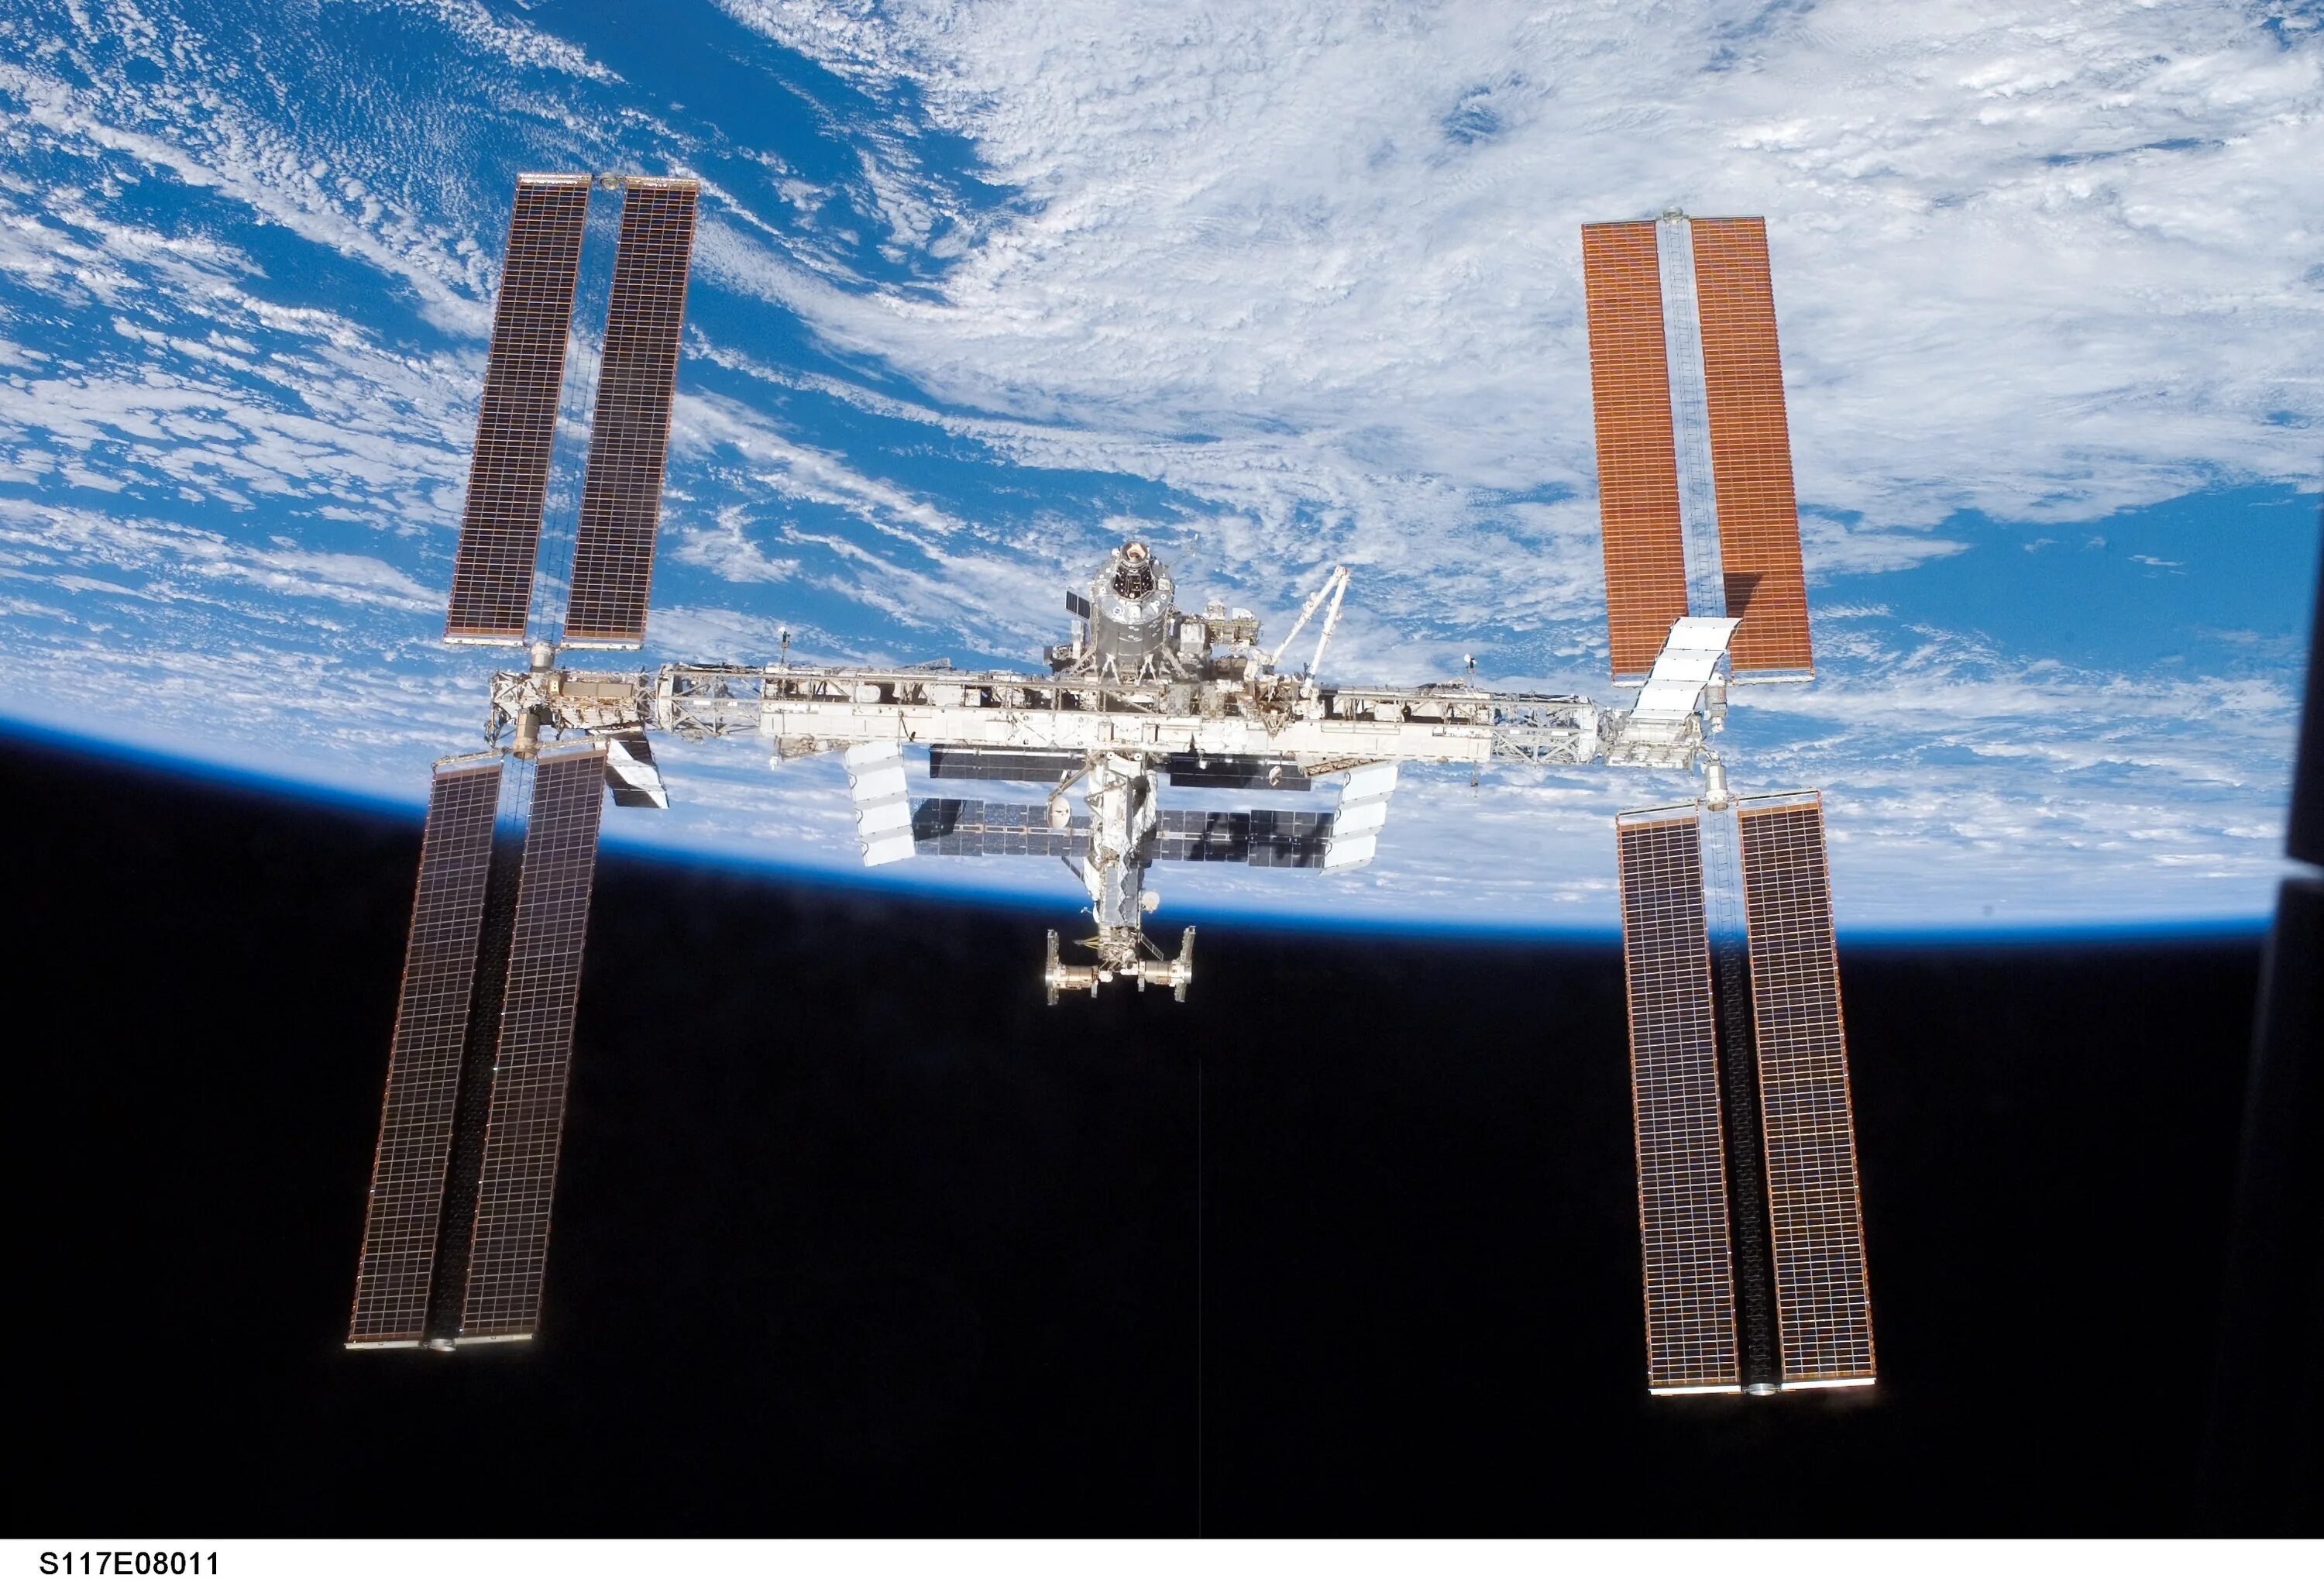 Самая дорогая космическая станция. Космическая станция МКС. ISS Космическая станция. Международная орбитальная станция МКС. Спейс станция орбитальная.